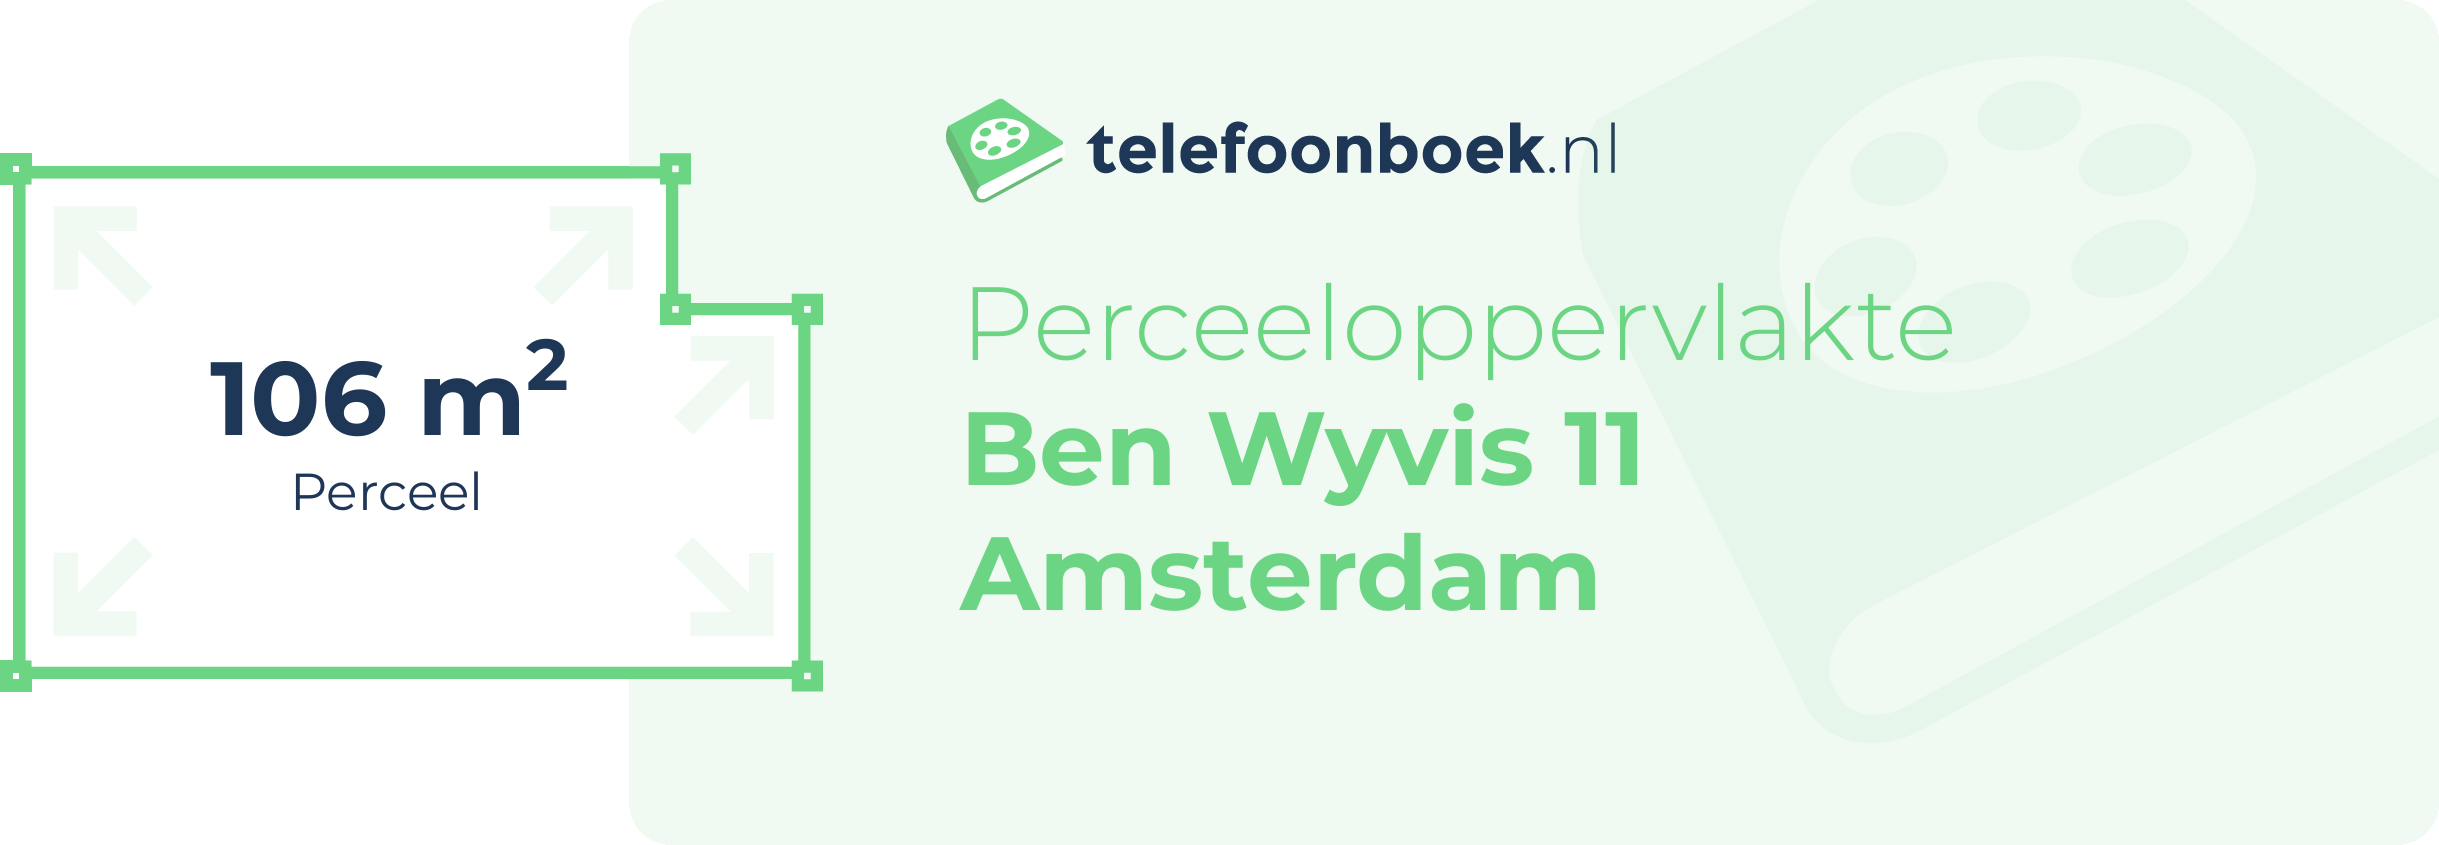 Perceeloppervlakte Ben Wyvis 11 Amsterdam